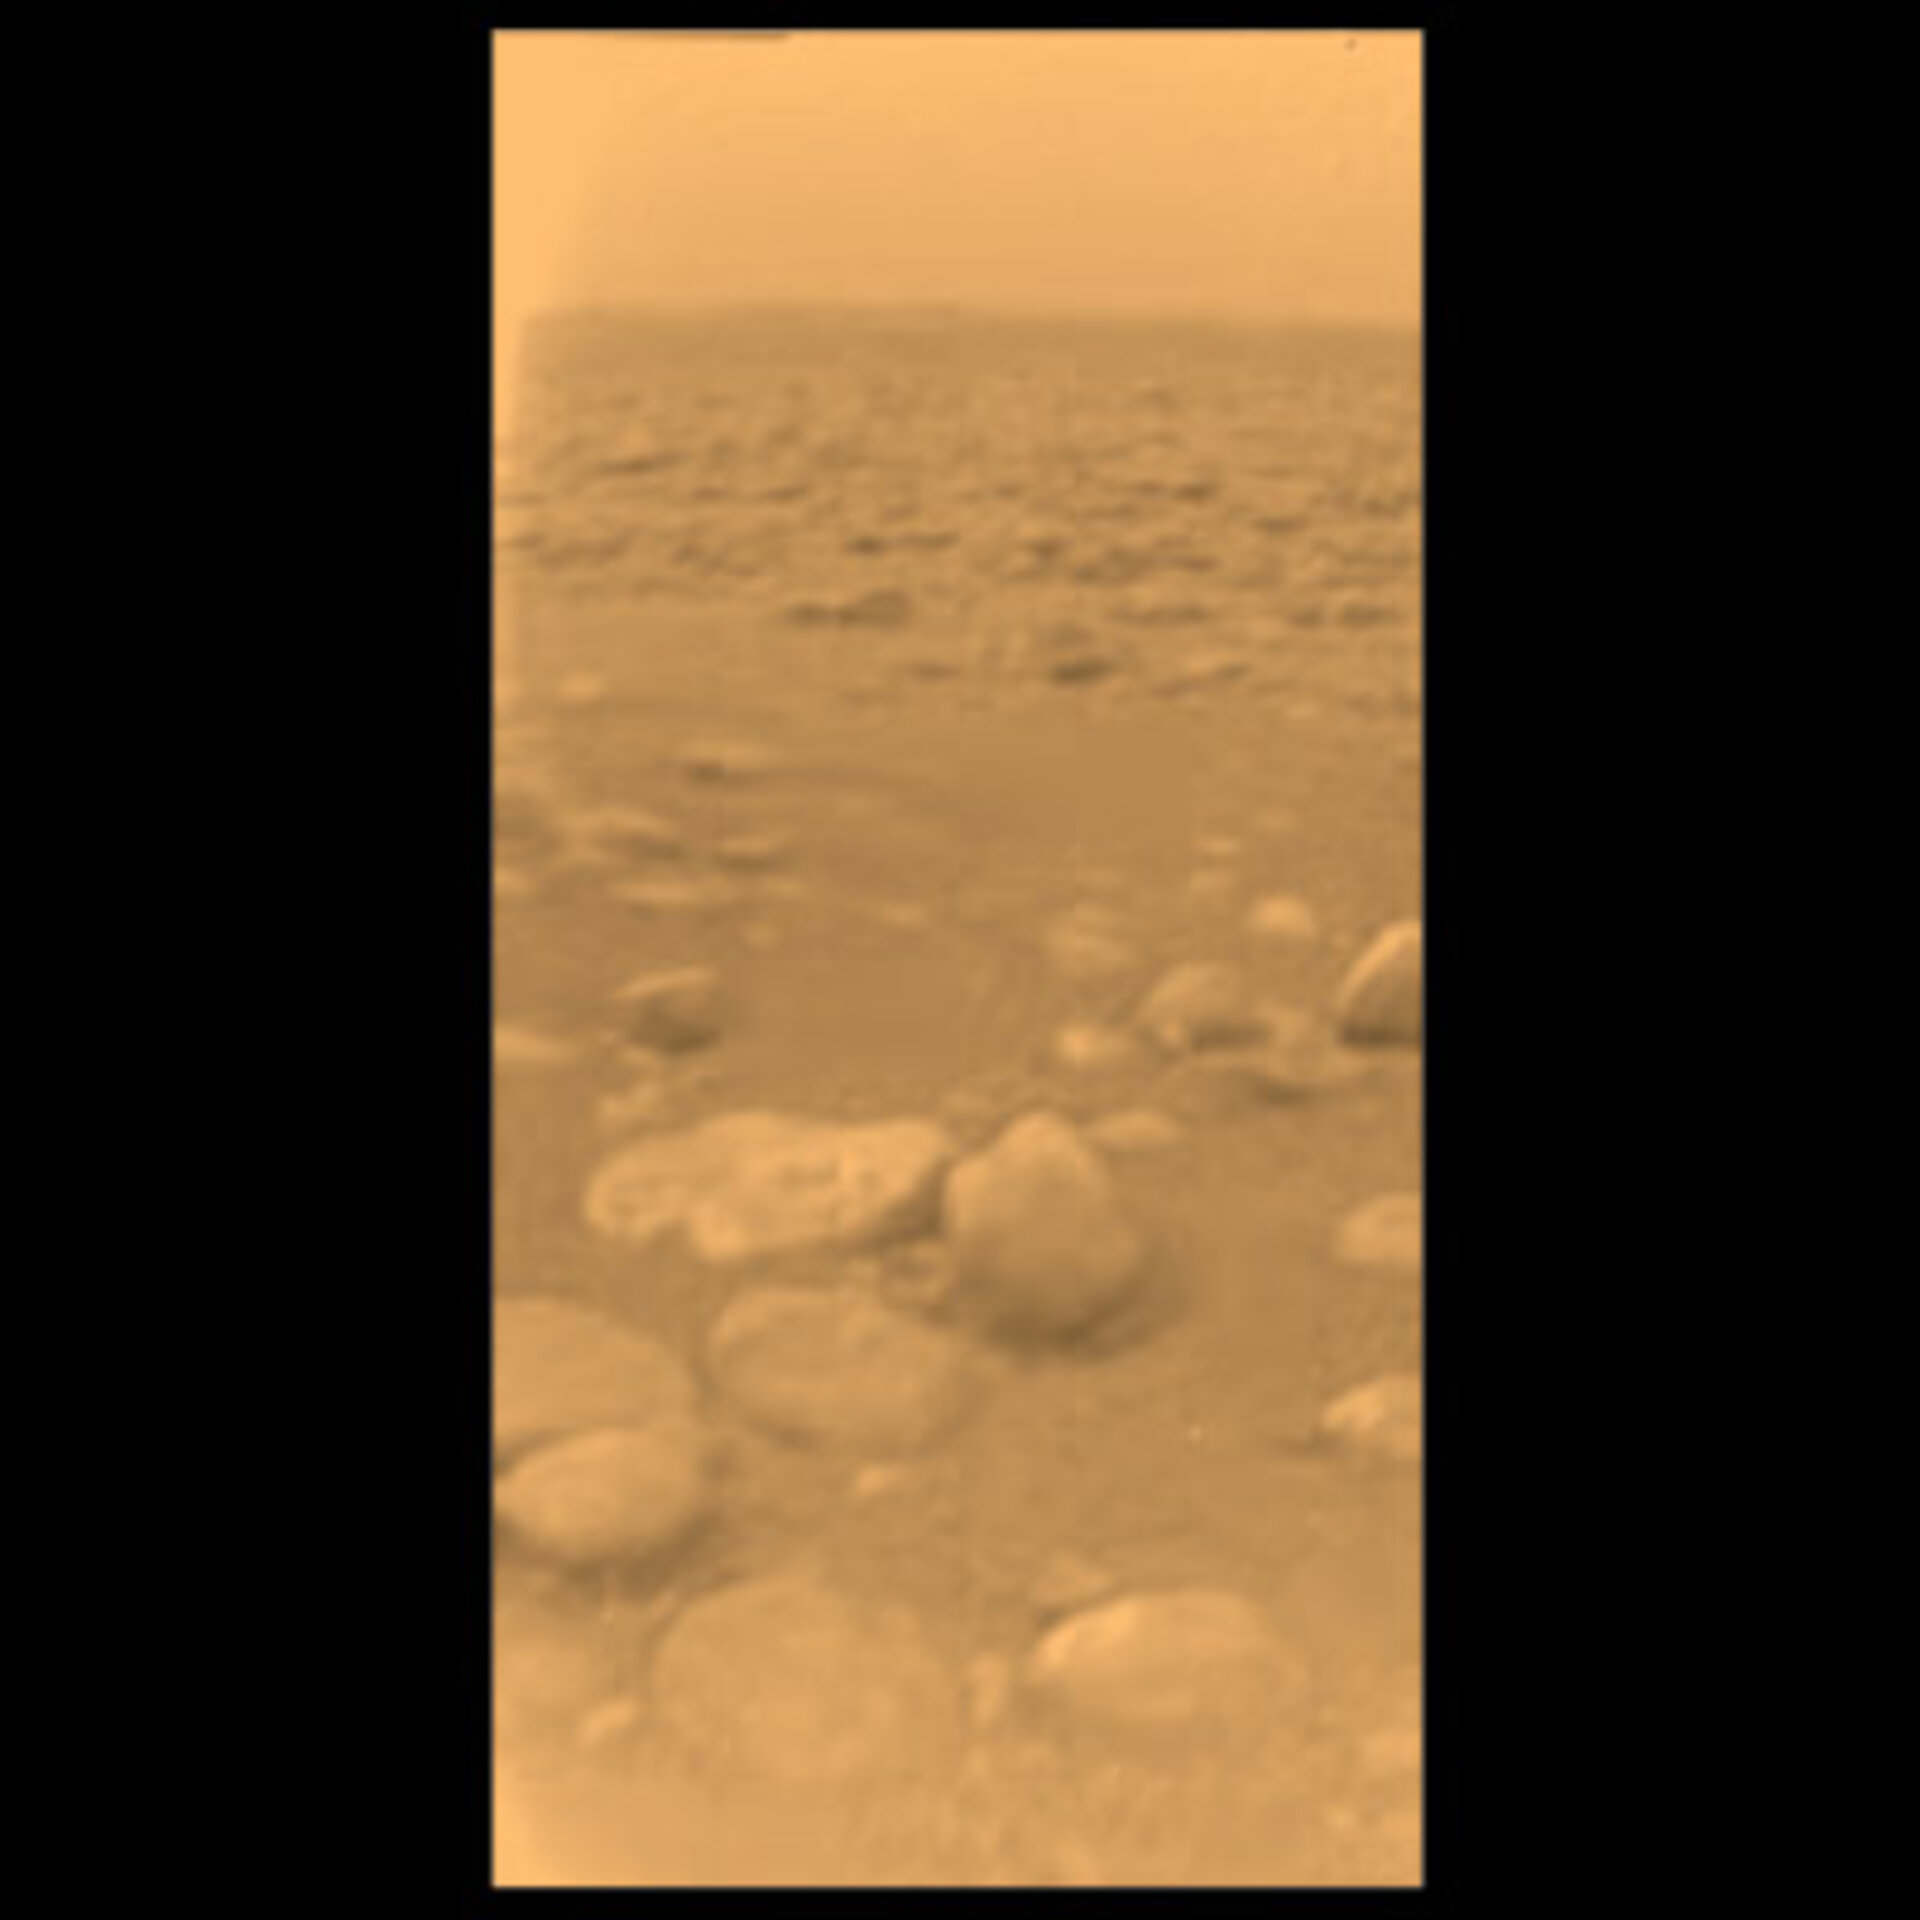 Ensimmäiset kuvat Titanin pinnalta, 14. tammikuuta 2005